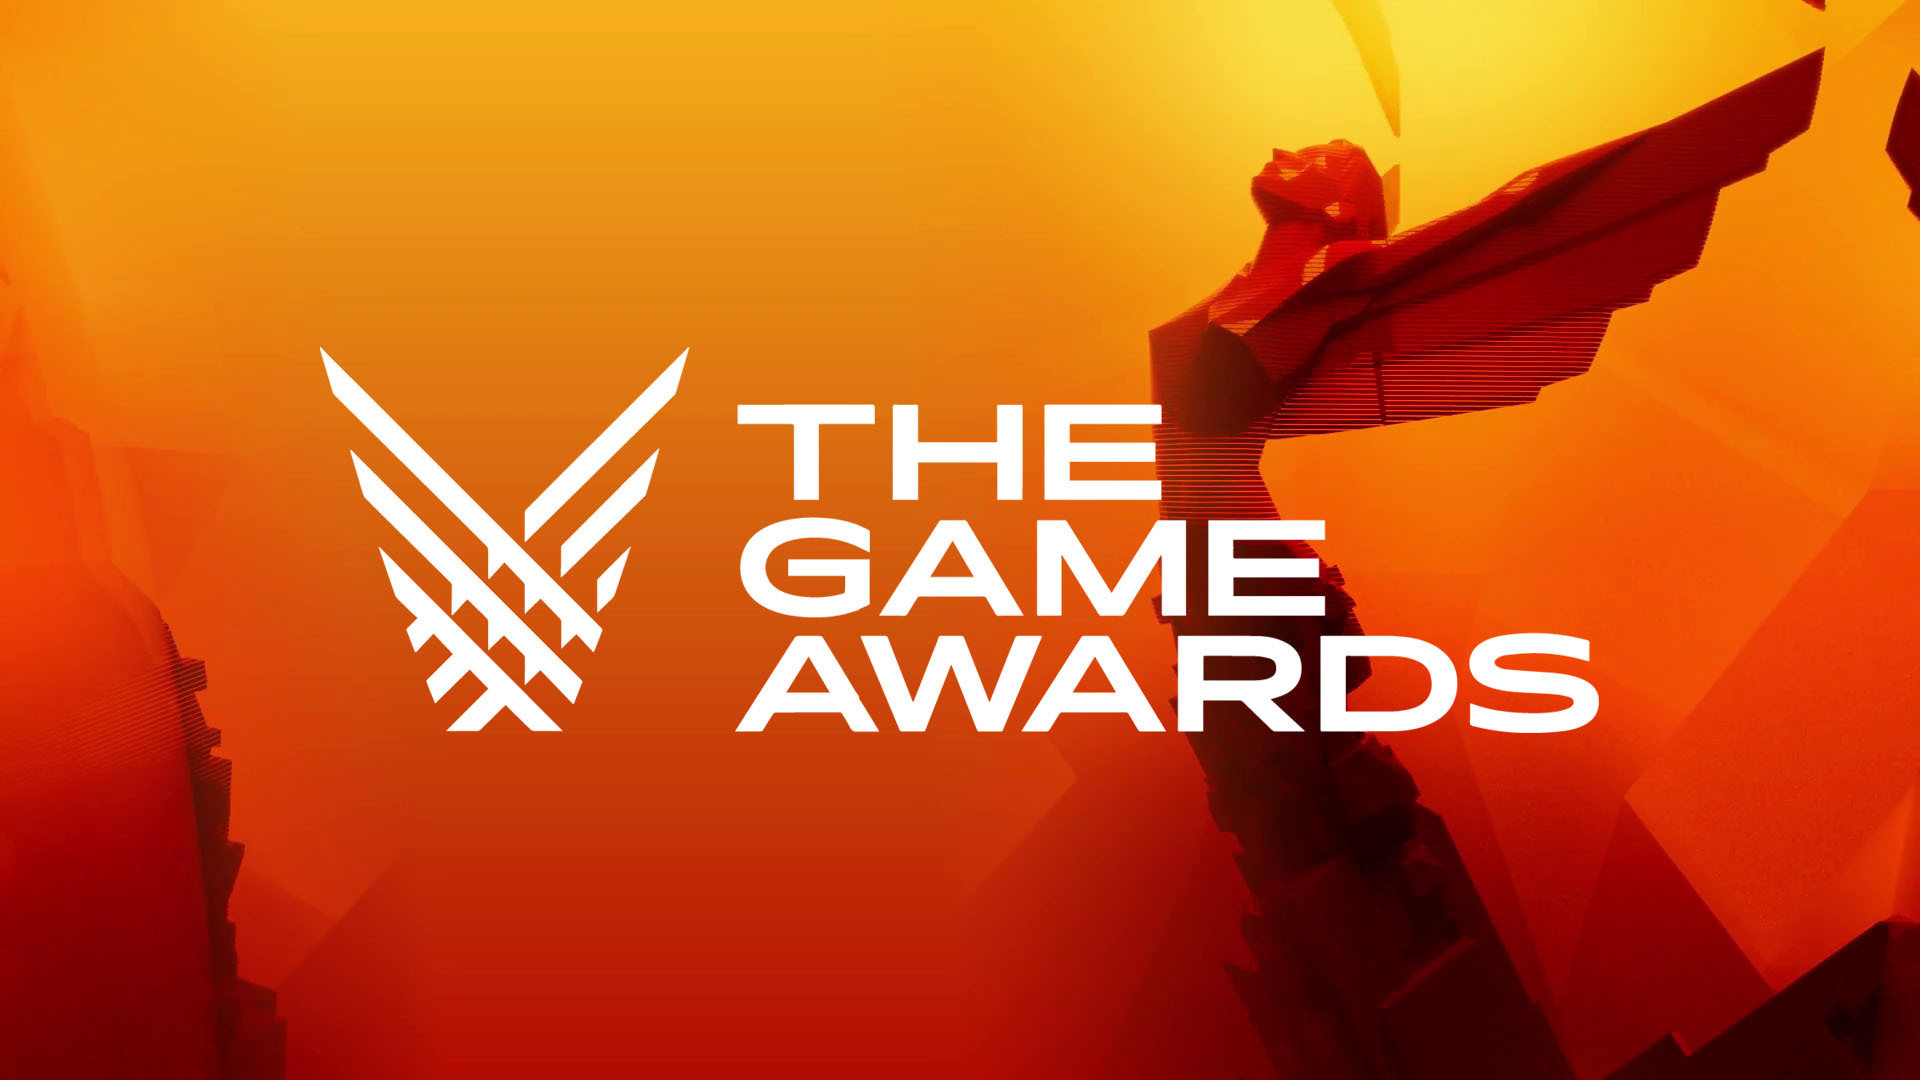 Aquí pueden encontrar la lista completa con todos los juegos ganadores de la presentación de la entrega de premios The Game Awards 2022.